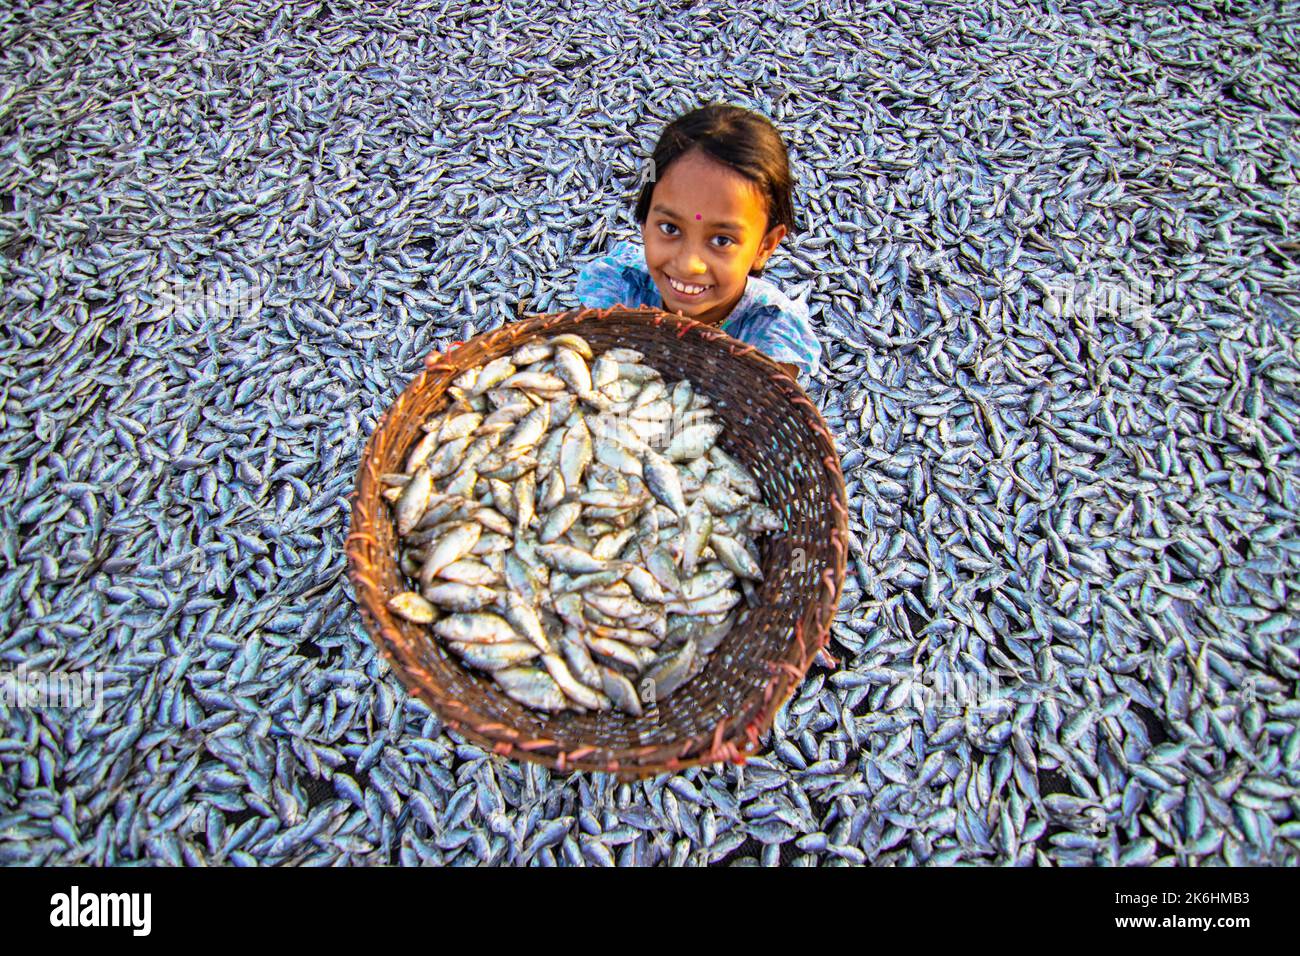 Les femmes traitent les petits poissons pour les affaires de poissons secs. Les travailleurs coupent et nettoient les poissons, ajoutent du sel, puis séchez-les sur une plate-forme en bambou. Banque D'Images